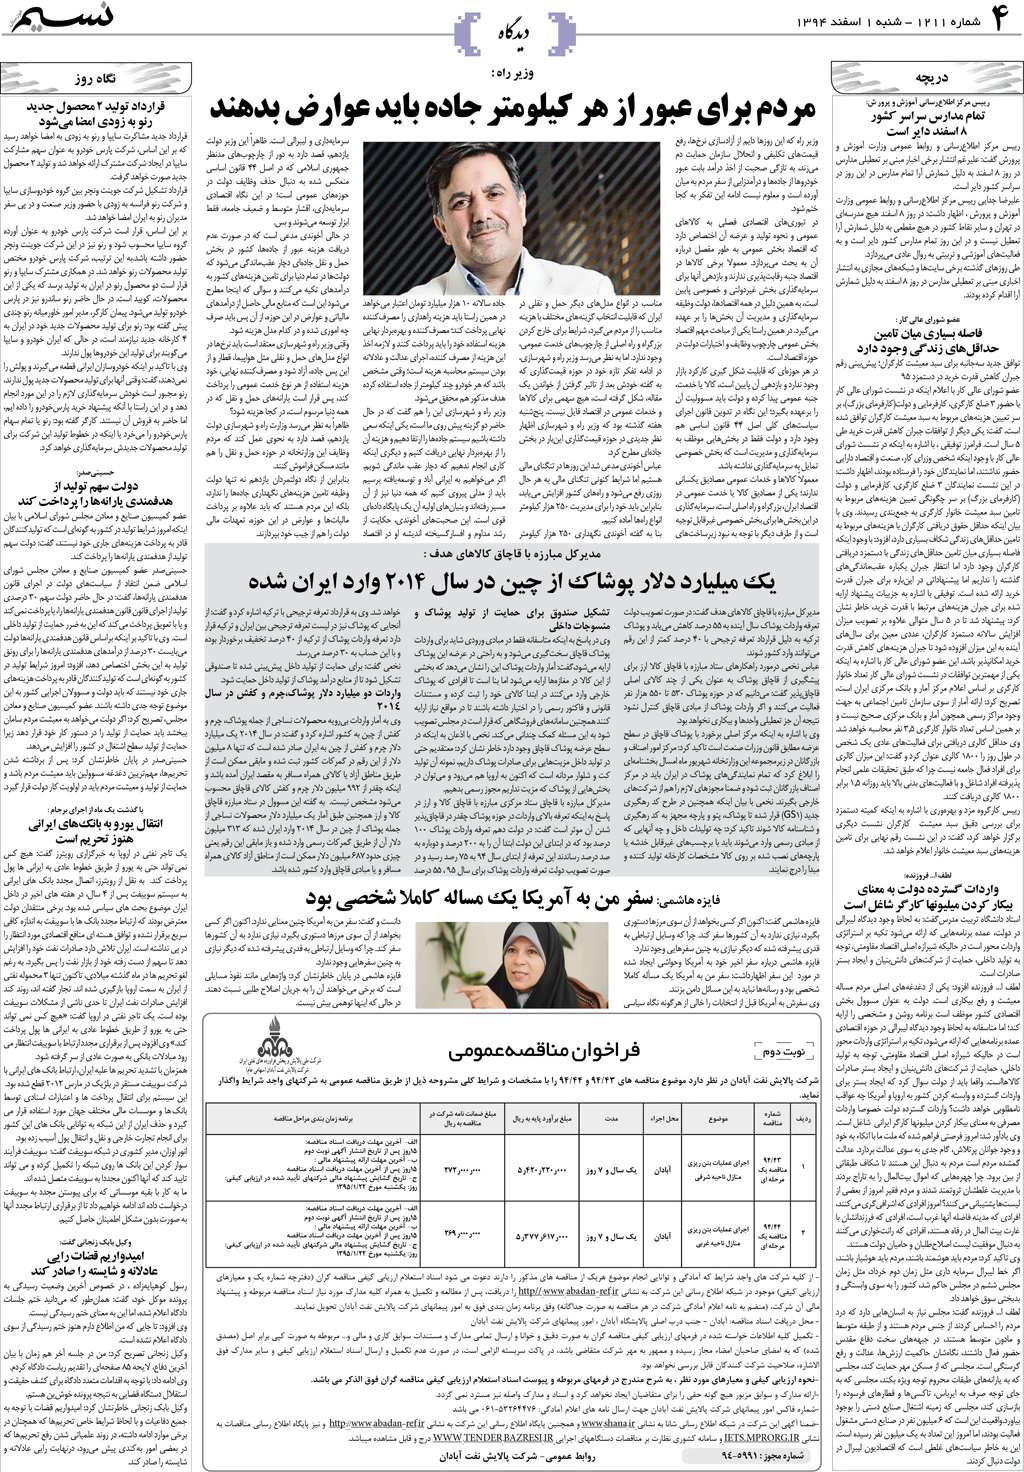 صفحه دیدگاه روزنامه نسیم شماره 1211